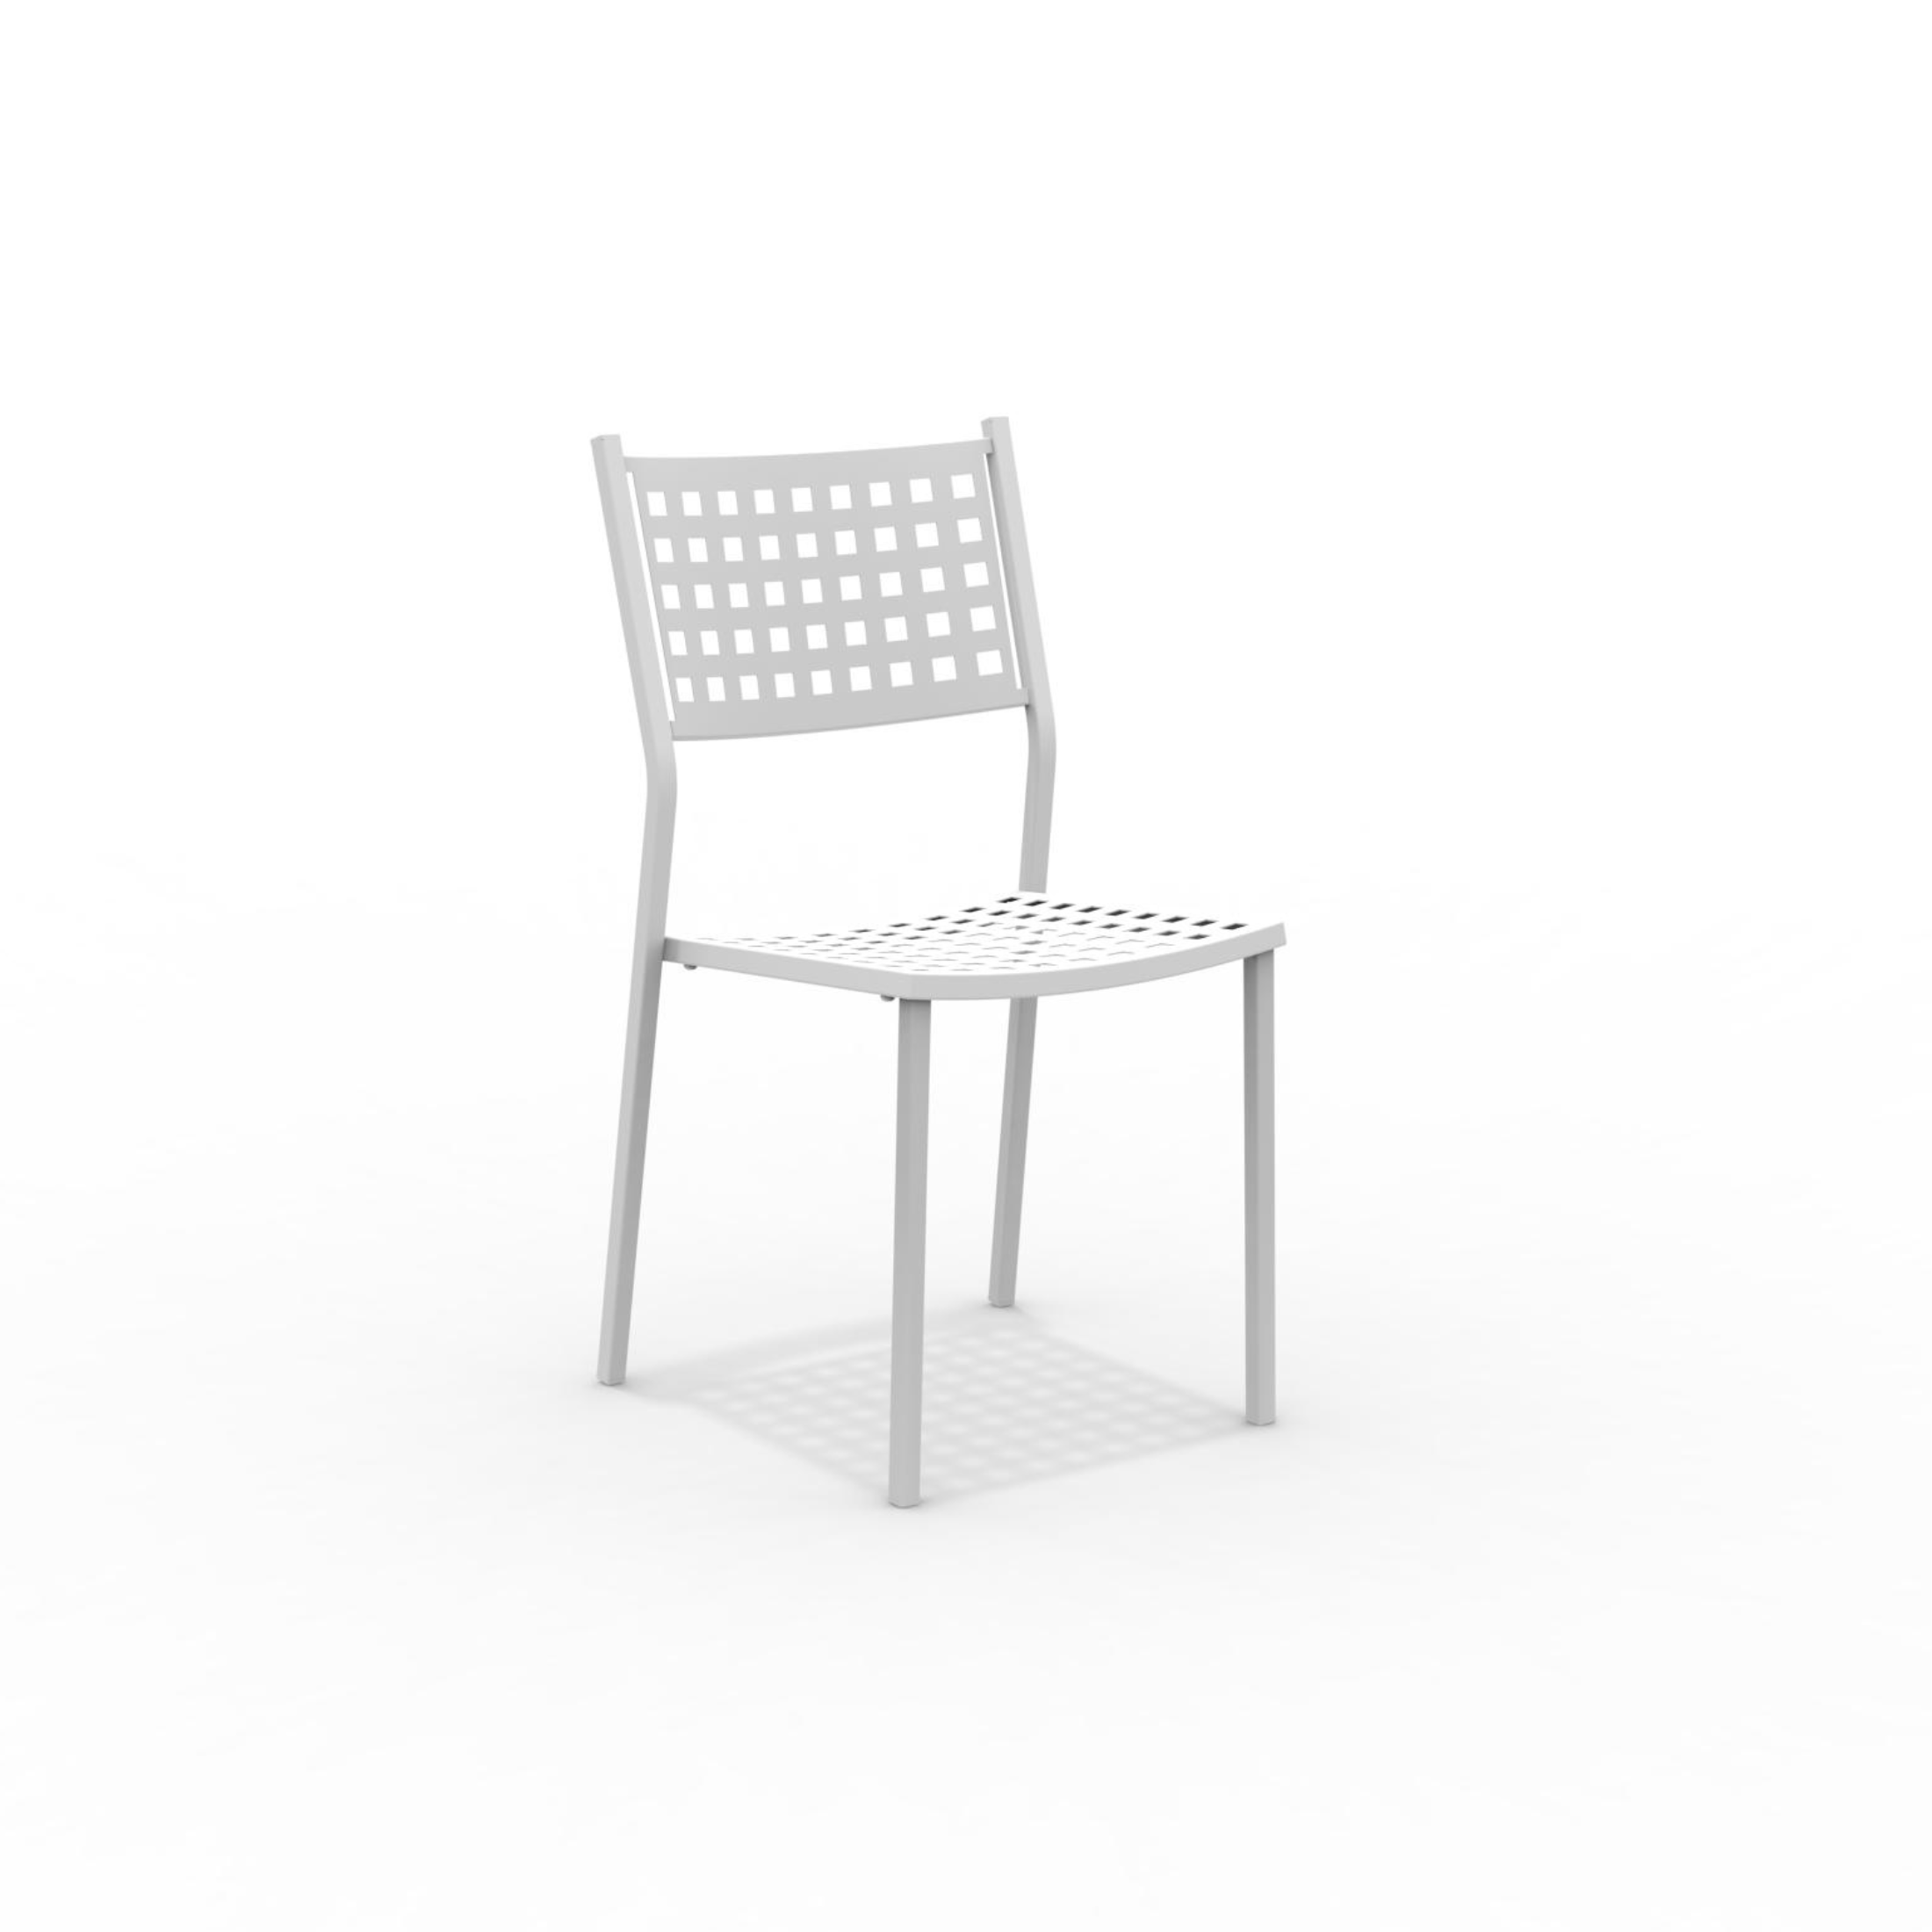 8 sillas de jardín de metal "Alice" con reposabrazos, apilables 43x48 cm 85h